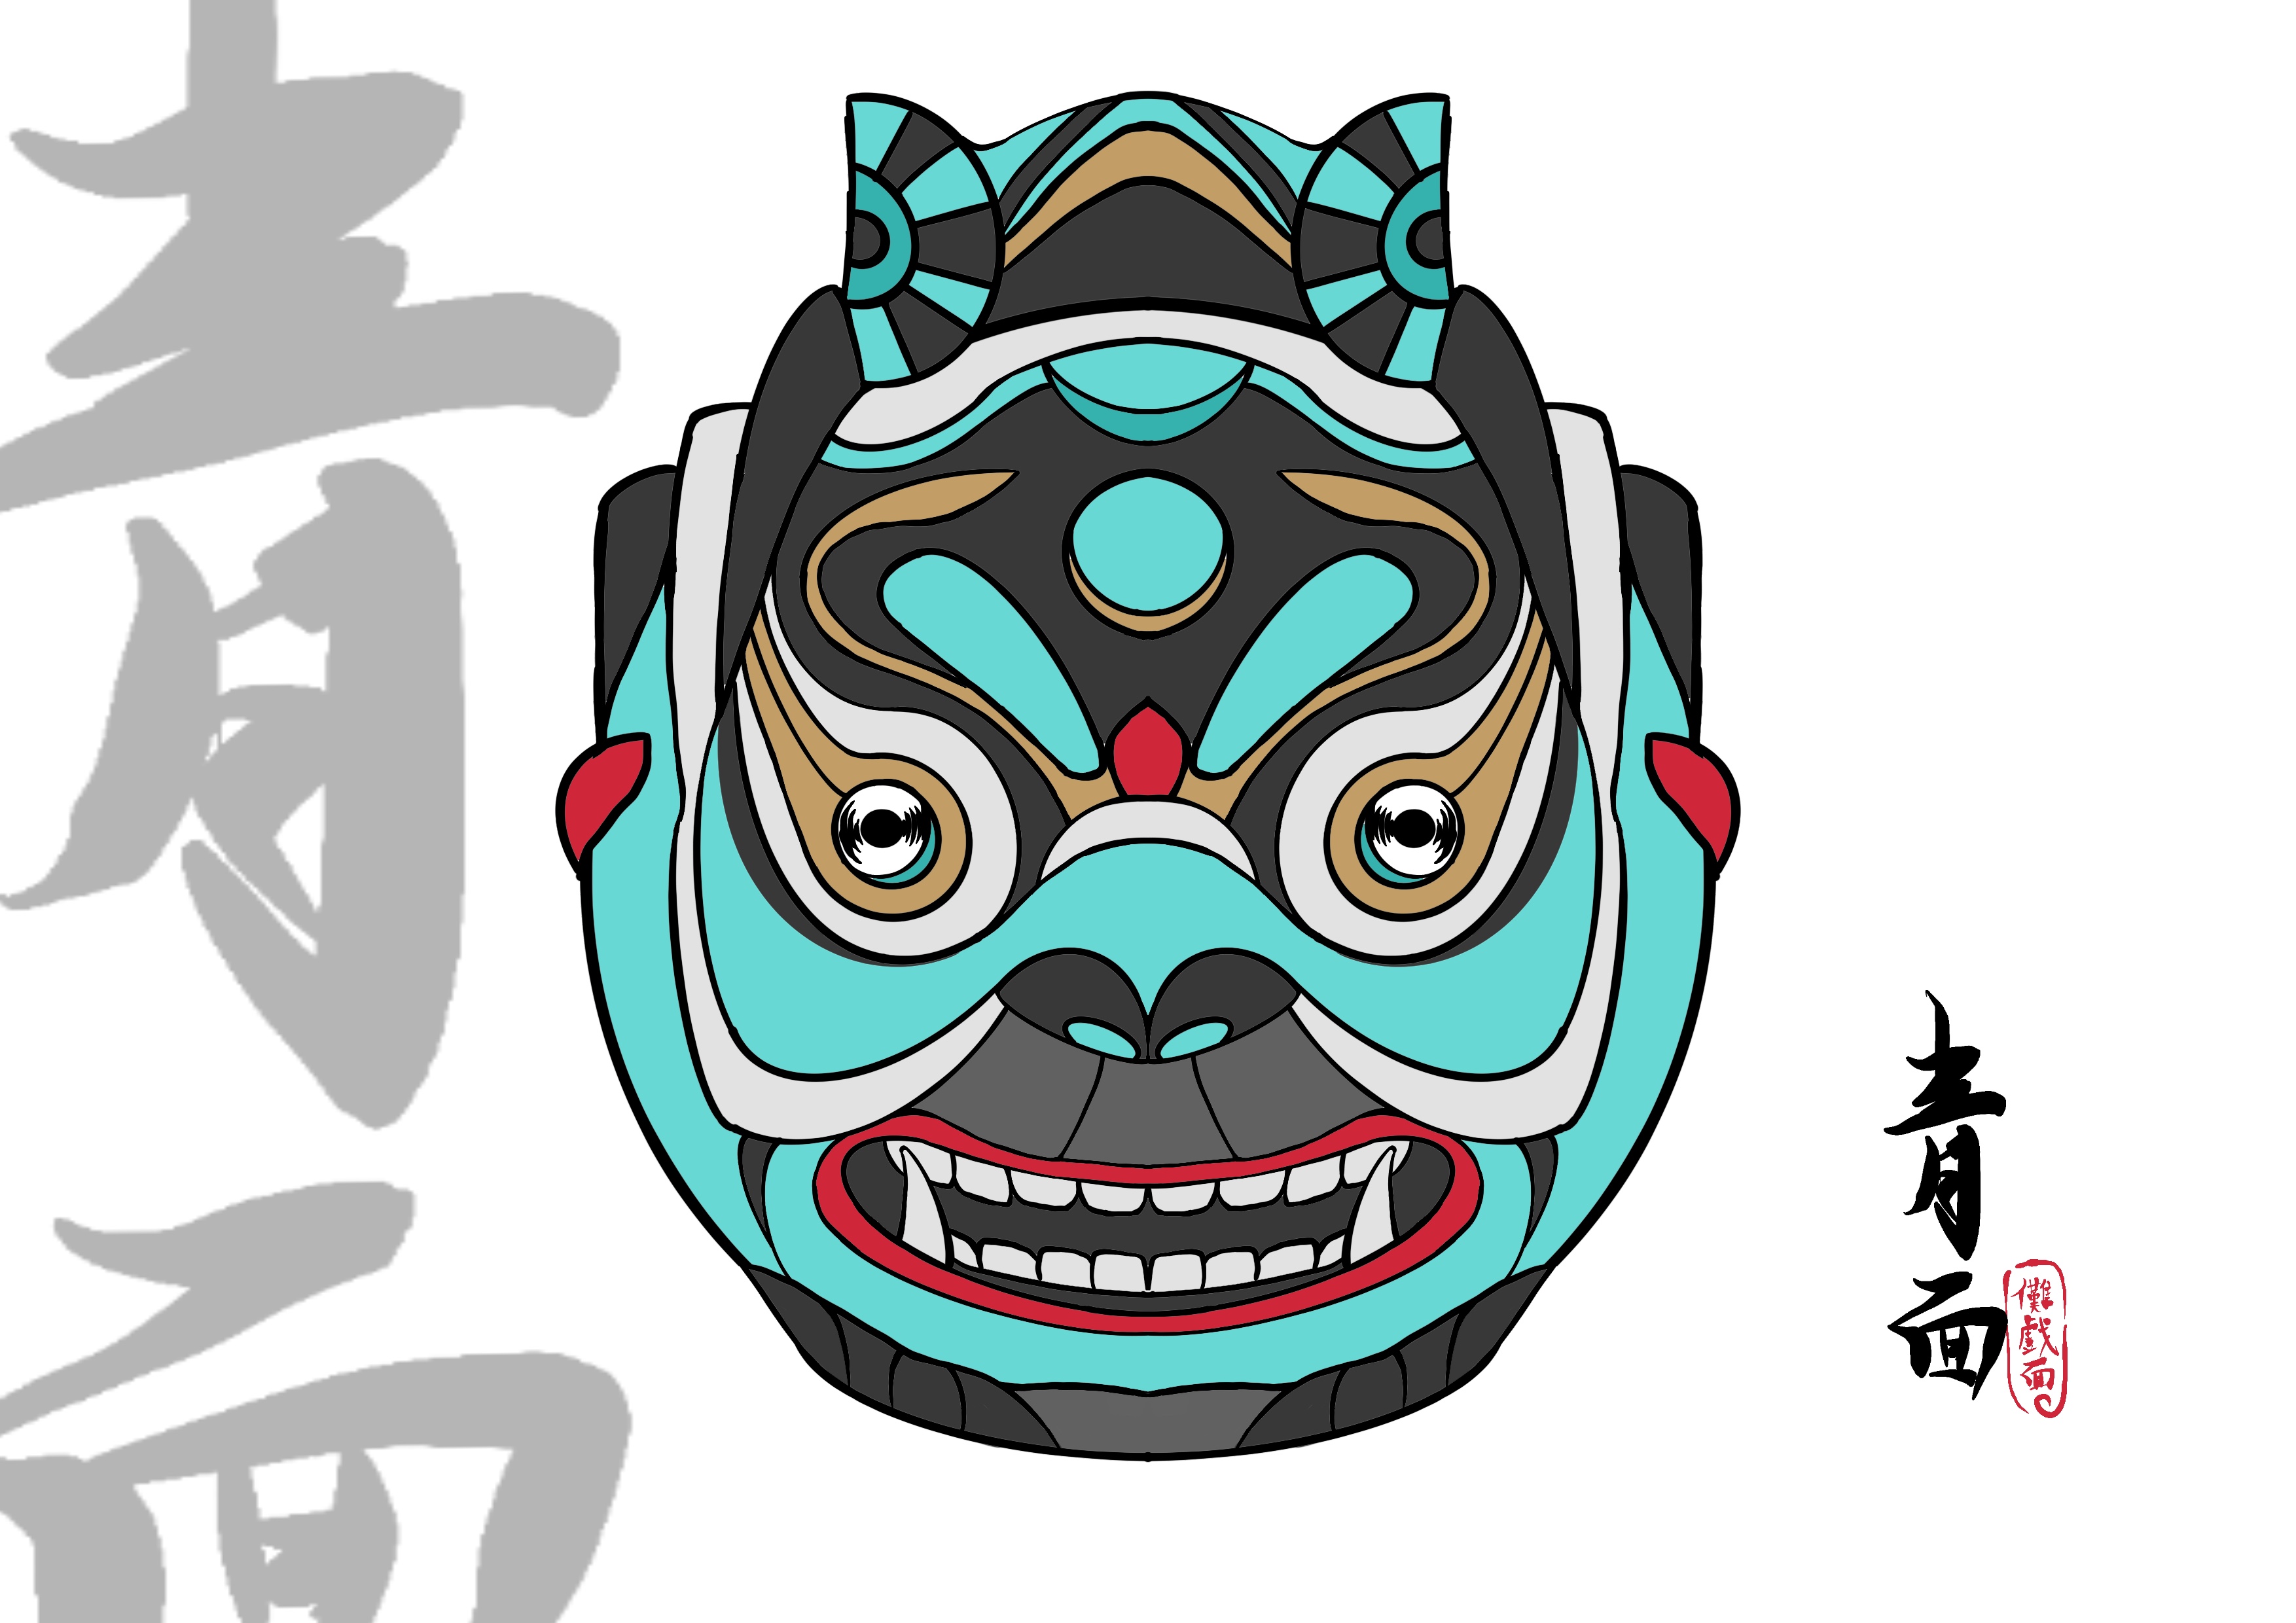 来自土家族的传统文化,傩戏面形象再表现上海/设计爱好者/1年前/190